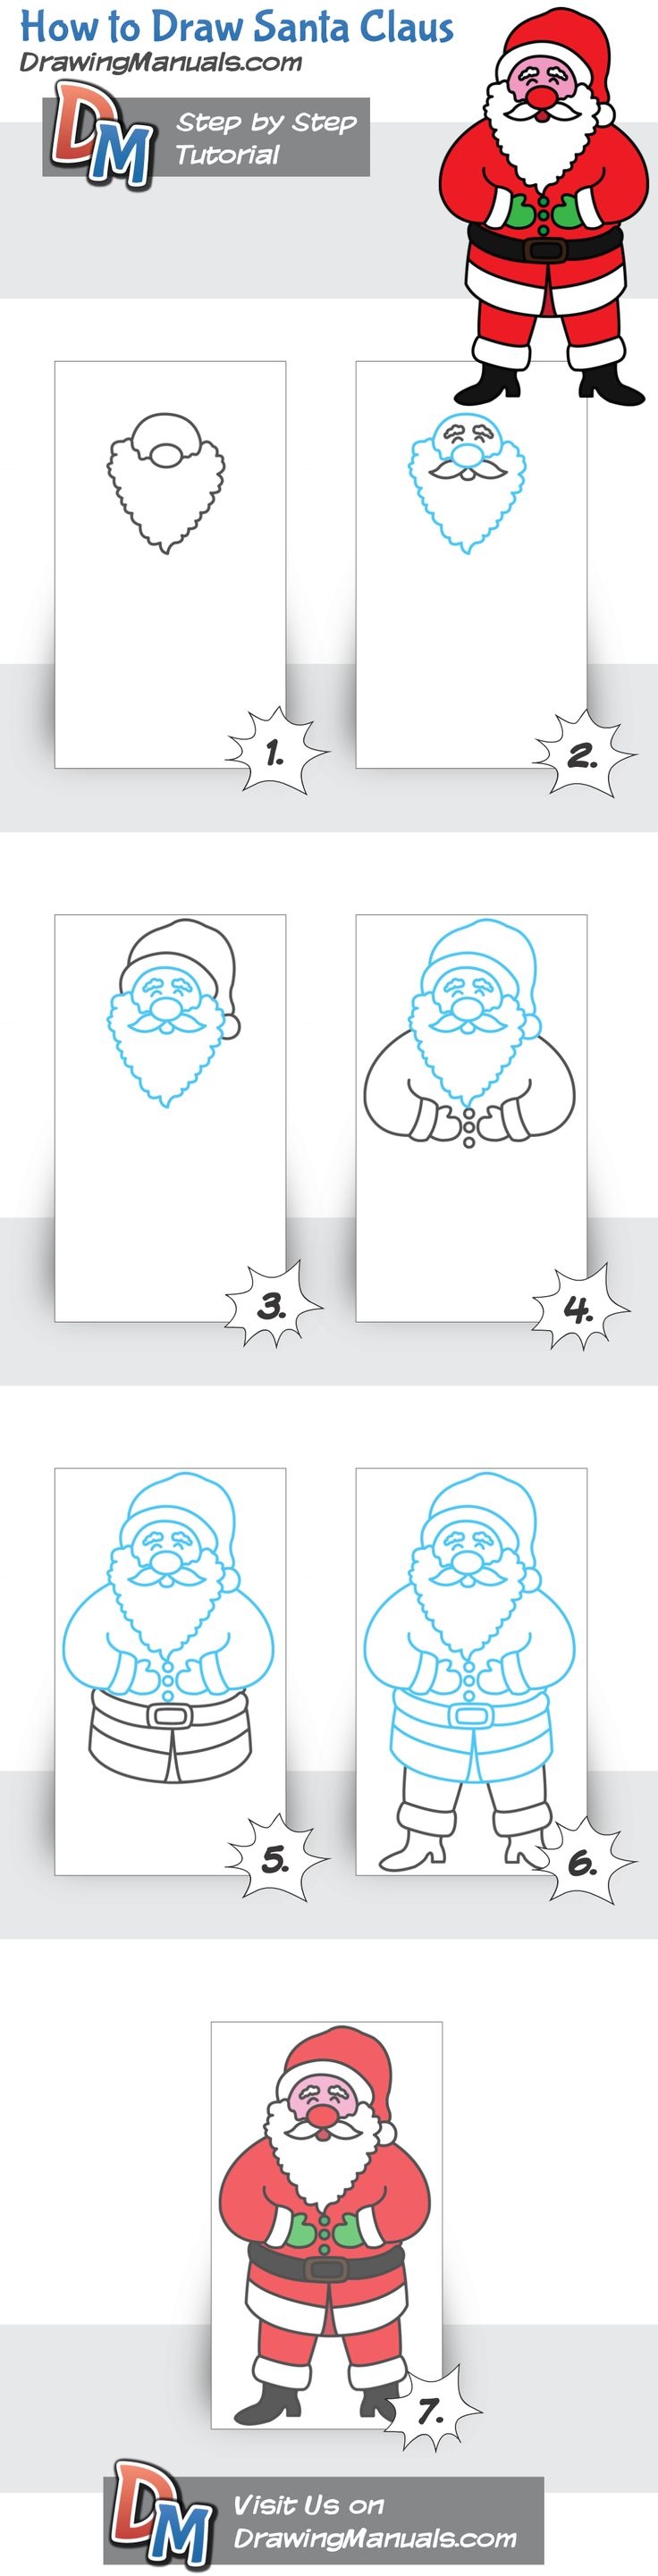 How to draw Santa